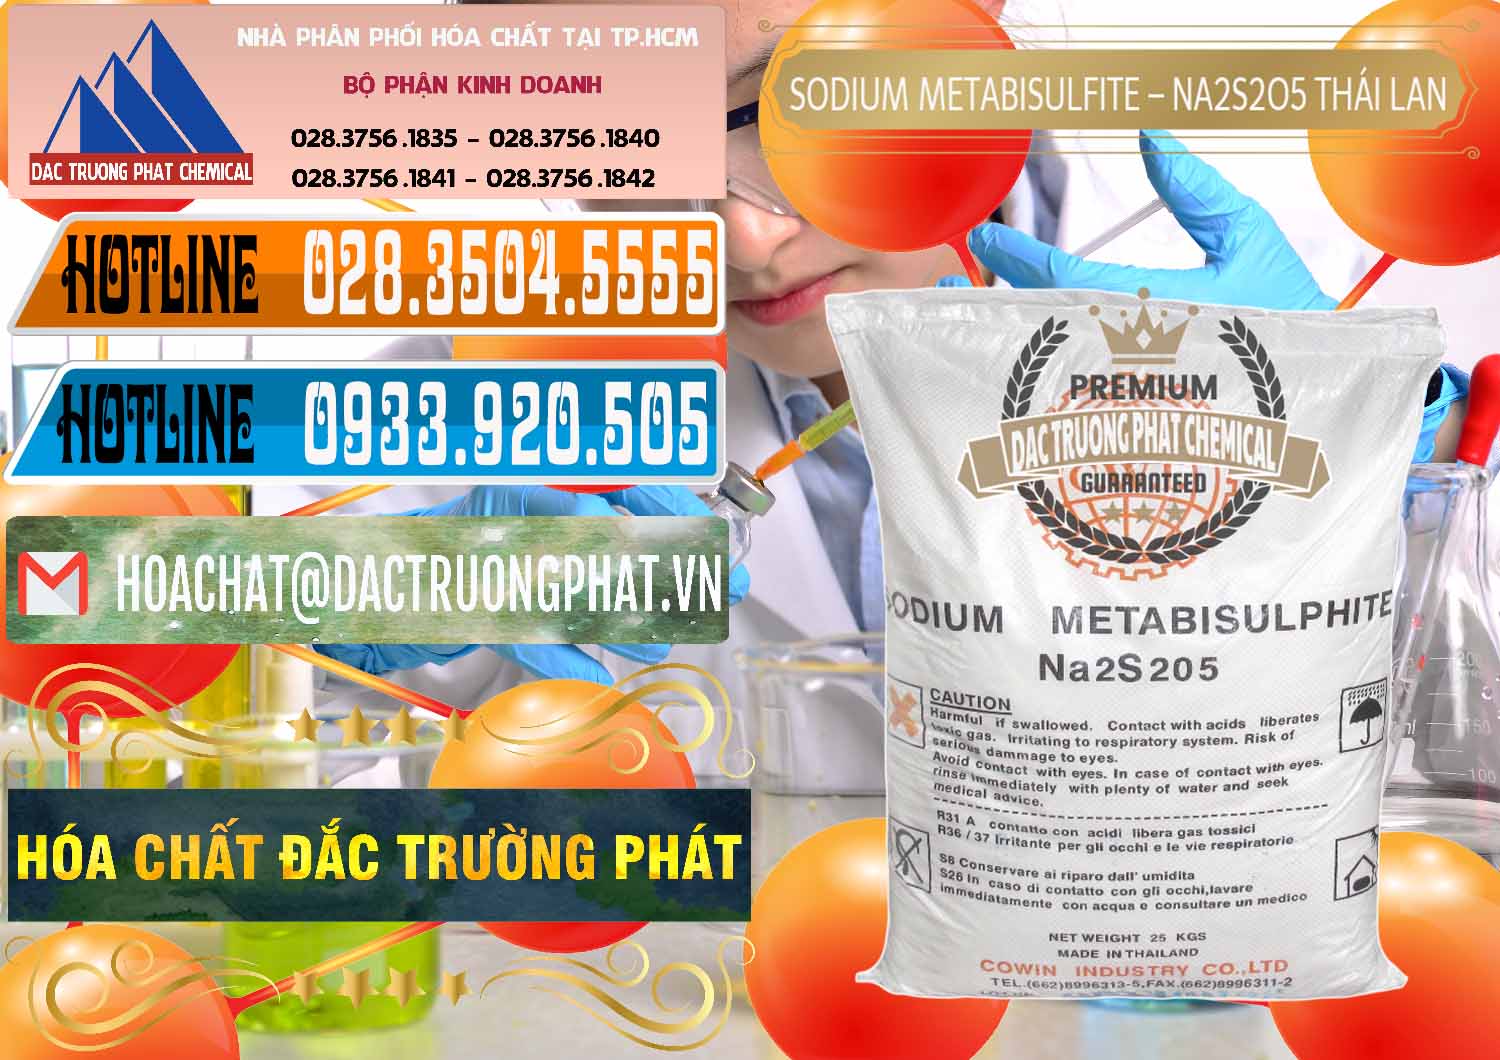 Phân phối - bán Sodium Metabisulfite - NA2S2O5 Thái Lan Cowin - 0145 - Cty kinh doanh & cung cấp hóa chất tại TP.HCM - stmp.net